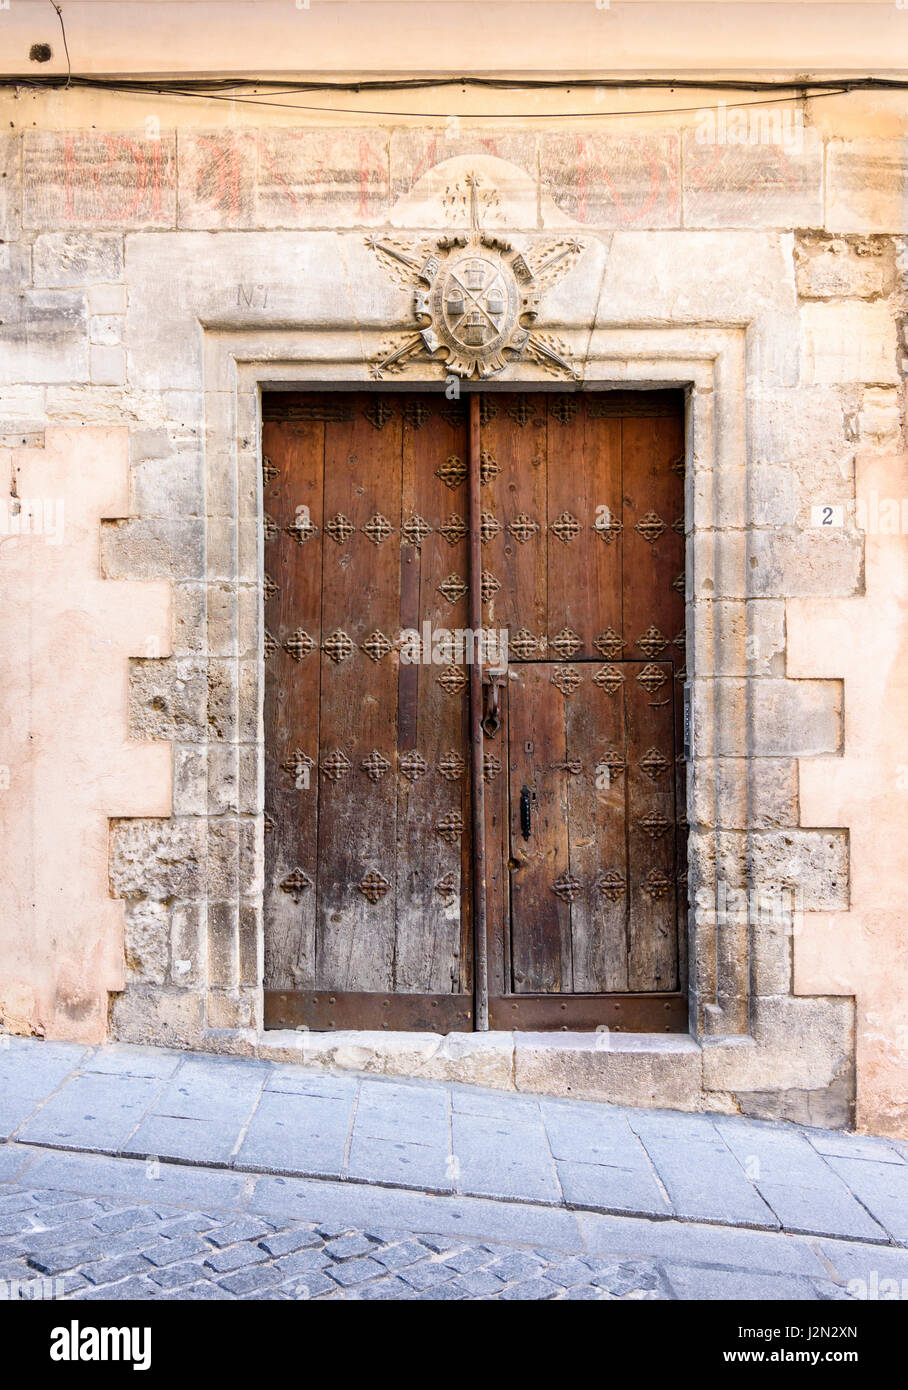 Dobles puertas antiguas de madera debajo de un escudo de armas en un edificio histórico en el casco antiguo de la ciudad medieval de Cuenca, Castilla La Mancha, España Foto de stock